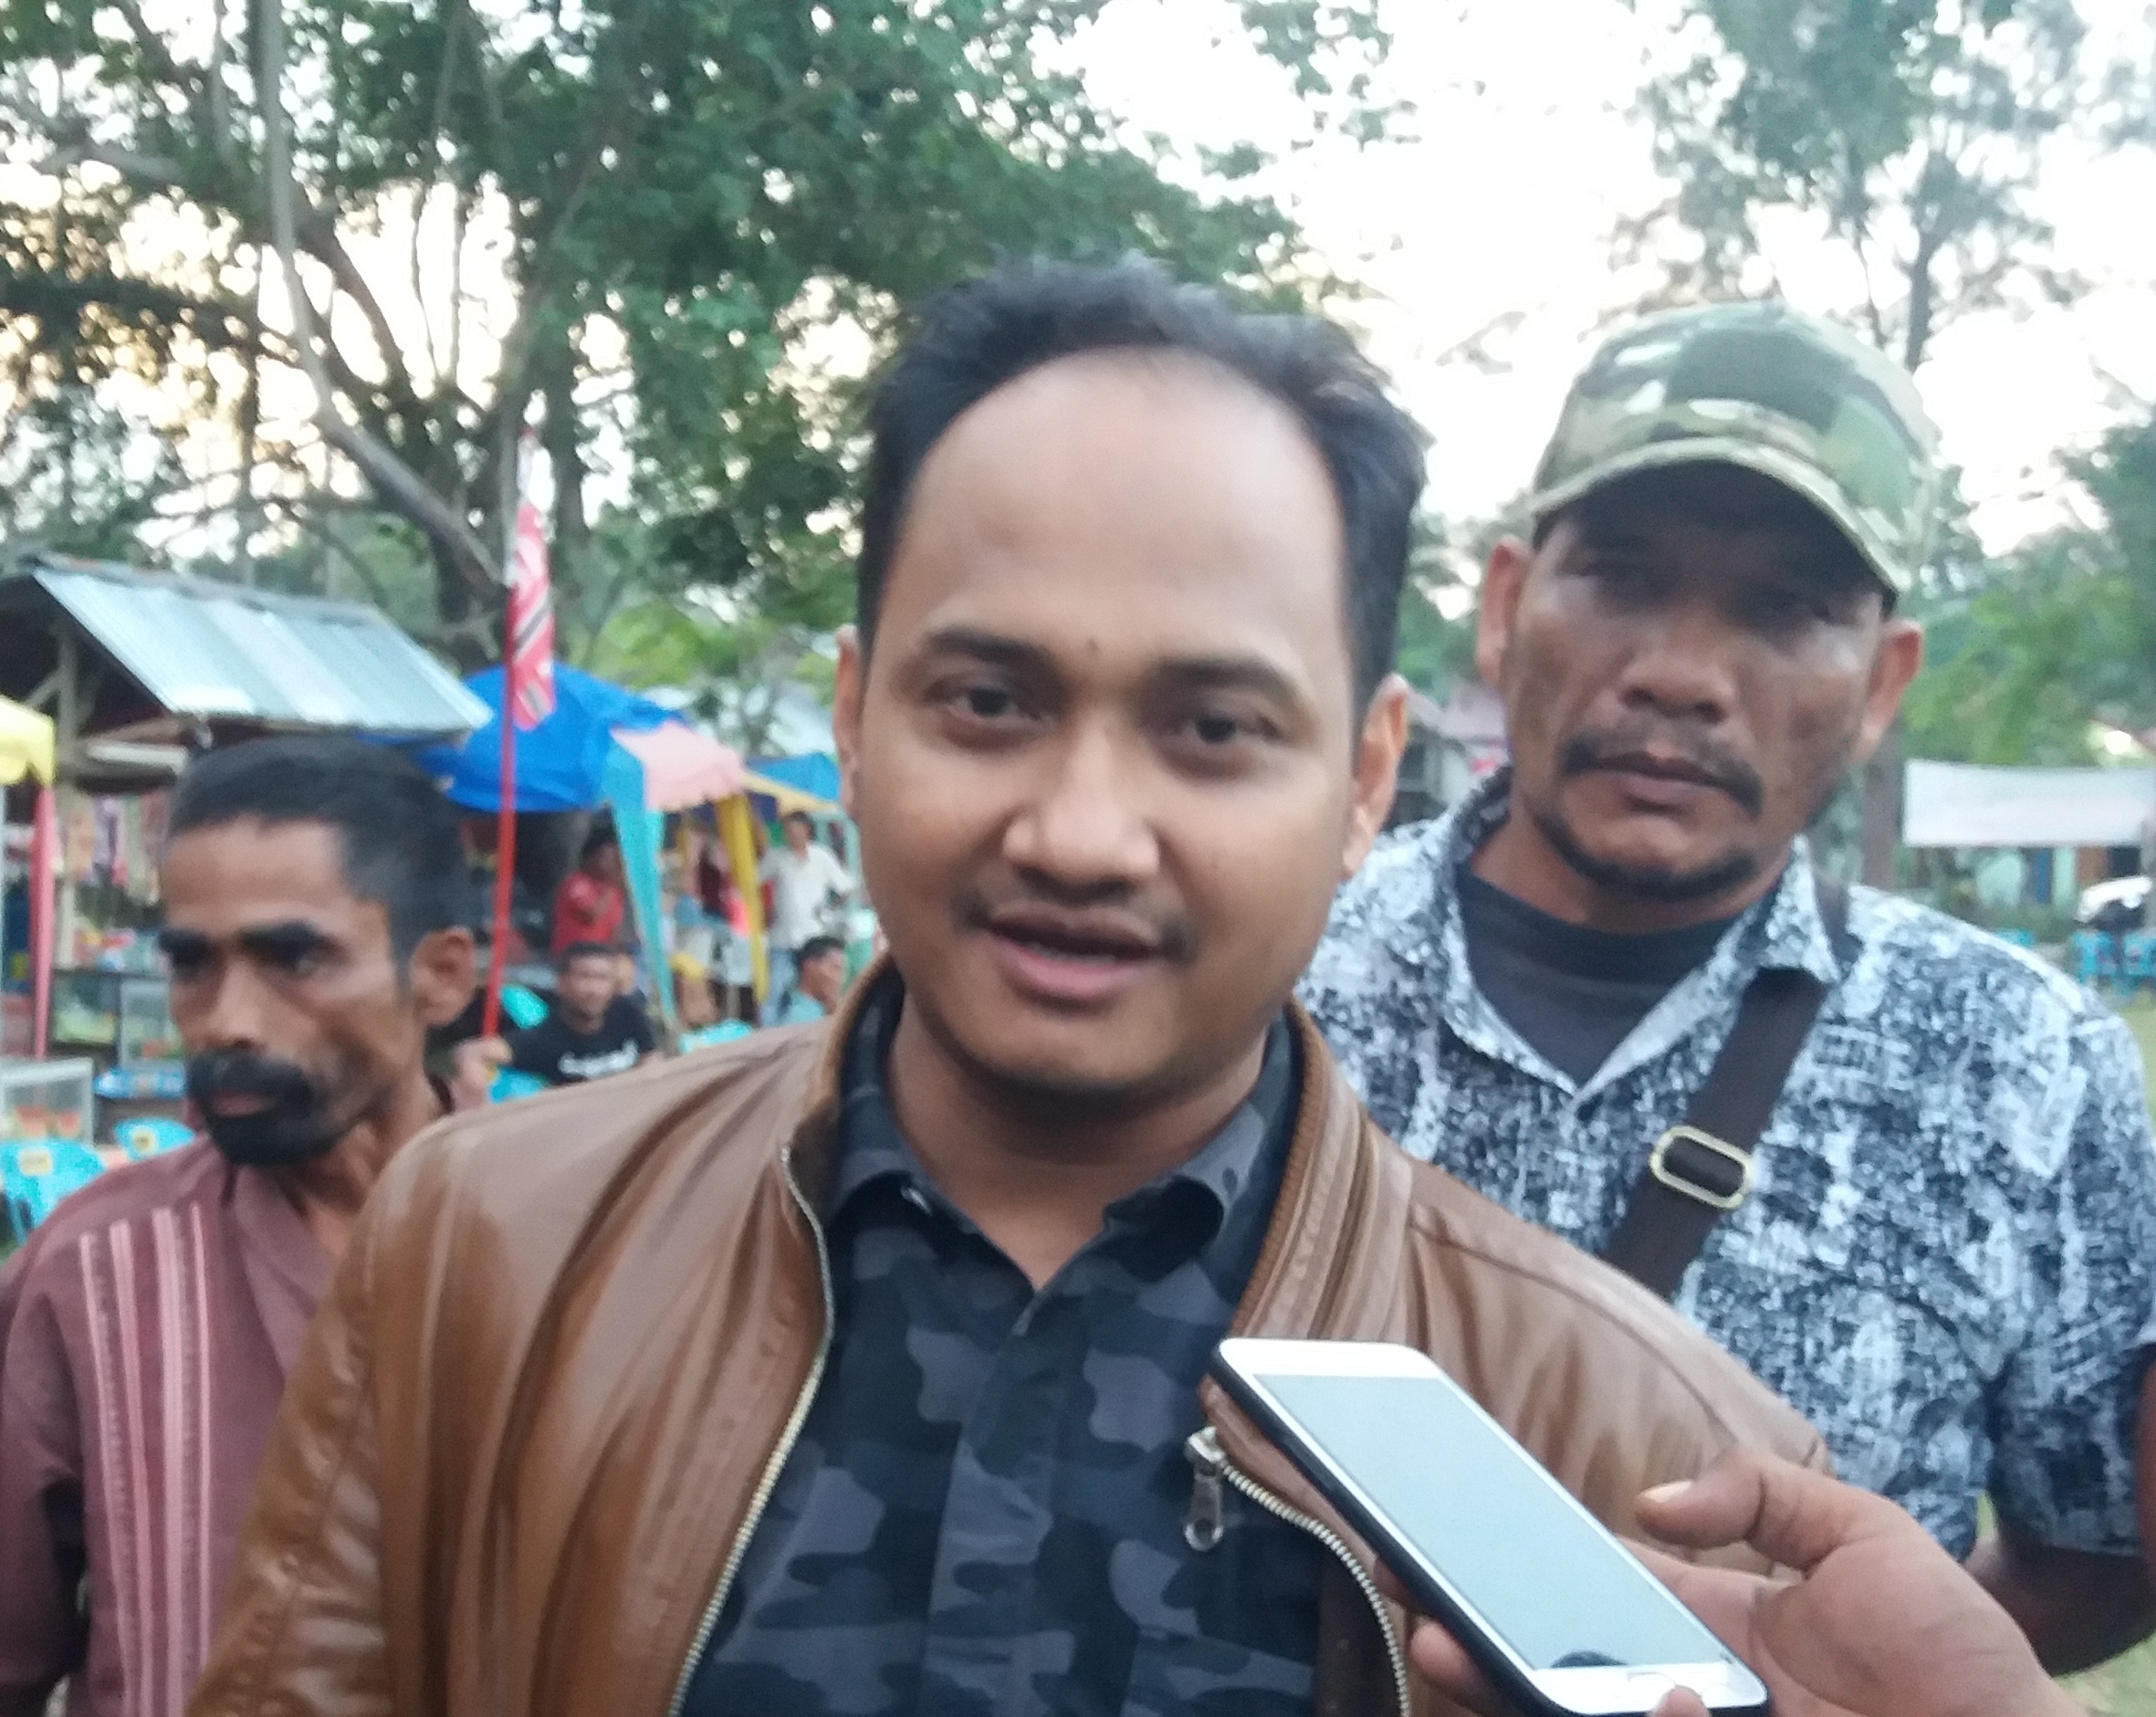 Rakyat Aceh Tuntut Referendum, Pemerintah Pusat Diminta Bersikap